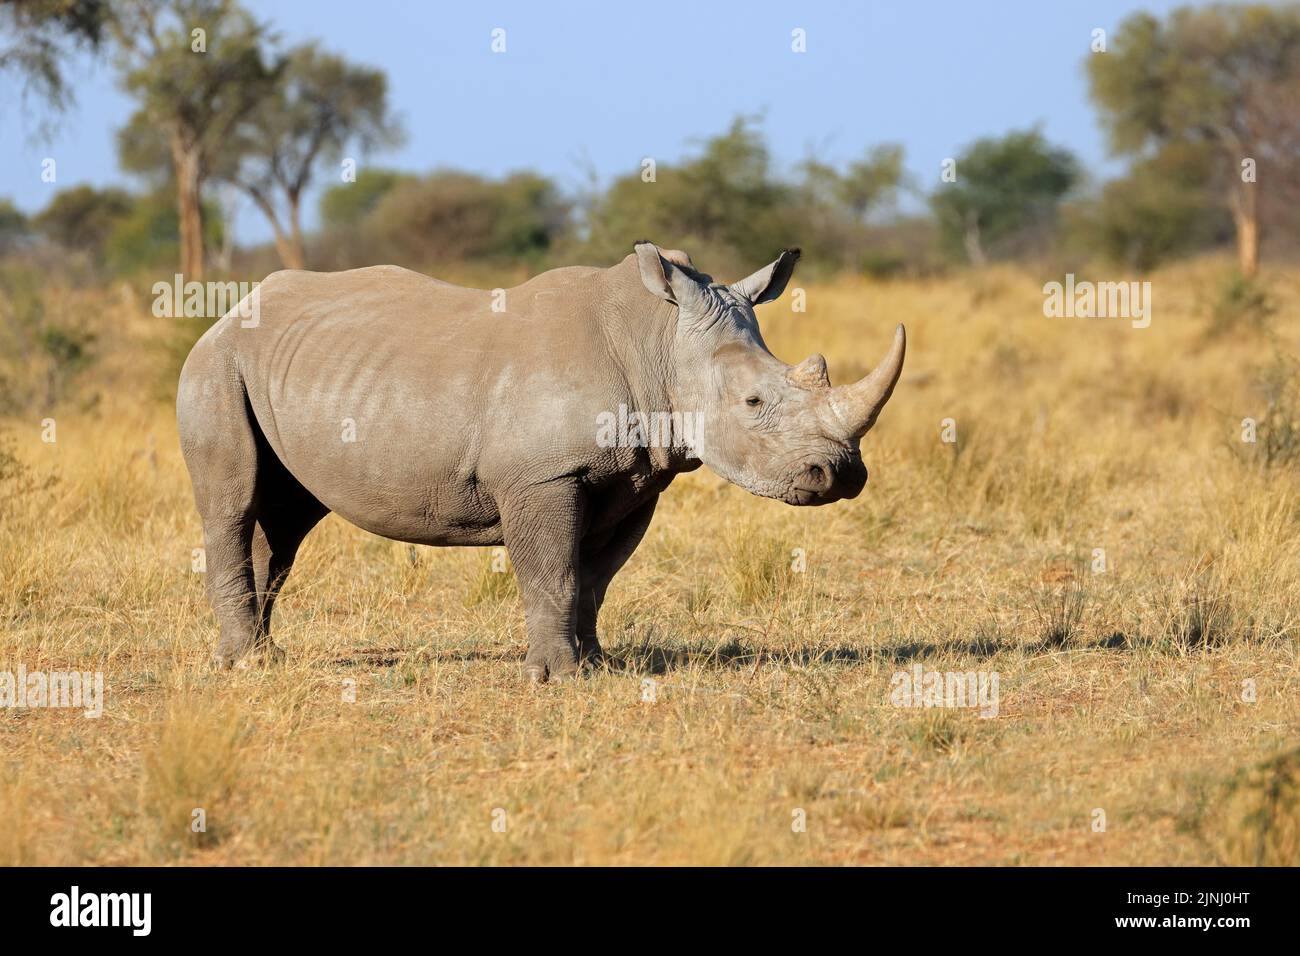 A white rhinoceros (Ceratotherium simum) in natural habitat, South Africa Stock Photo